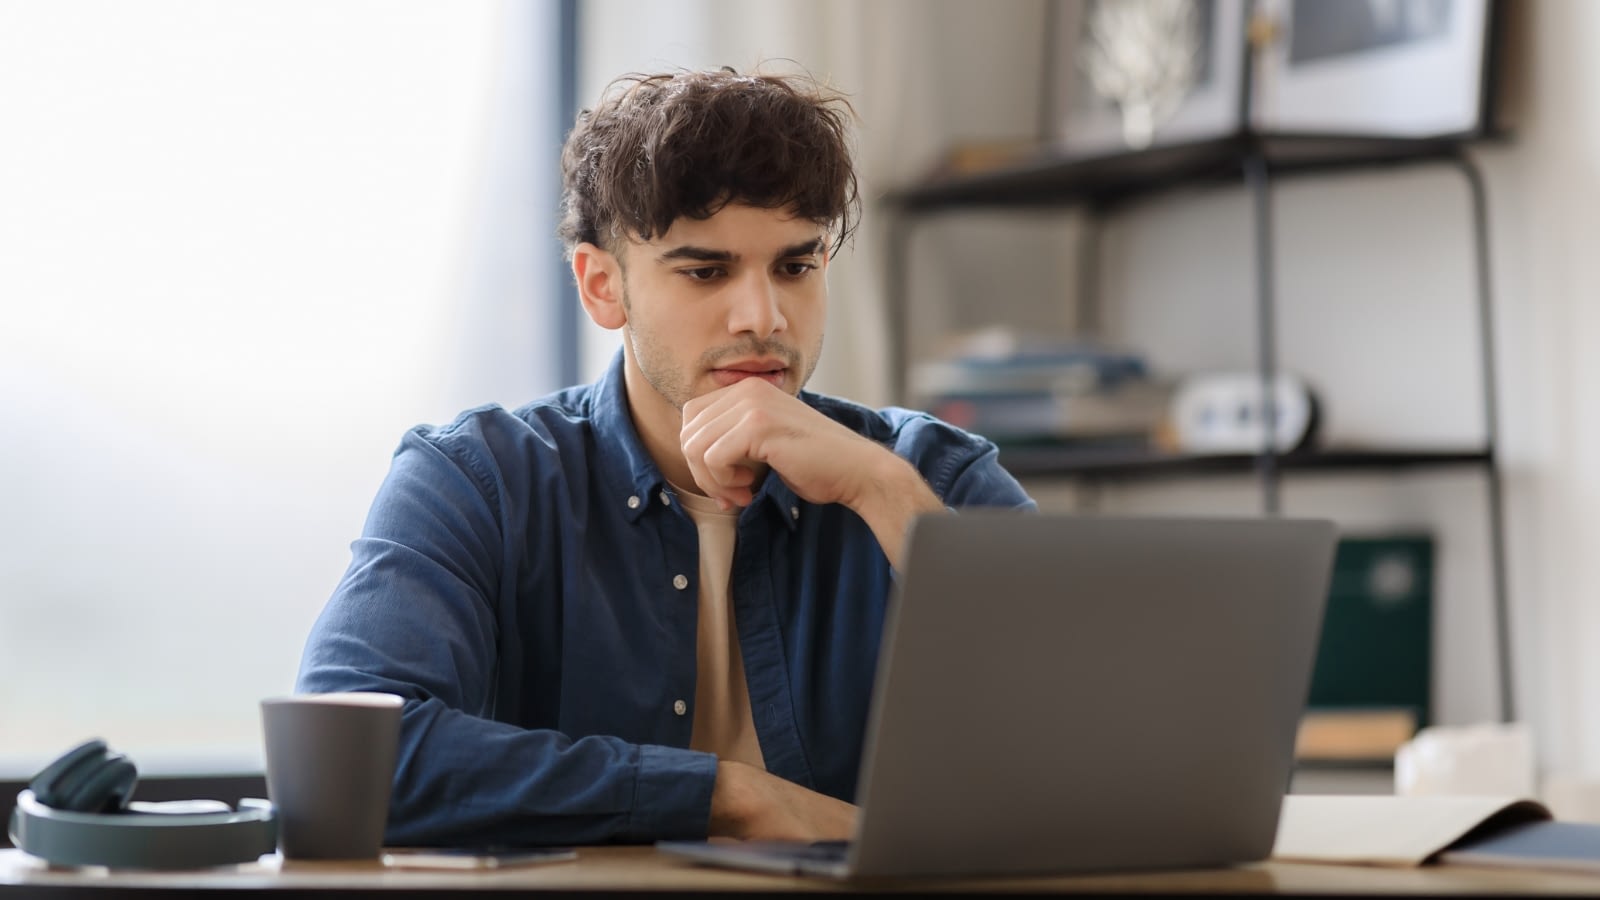 pensive man looking at laptop